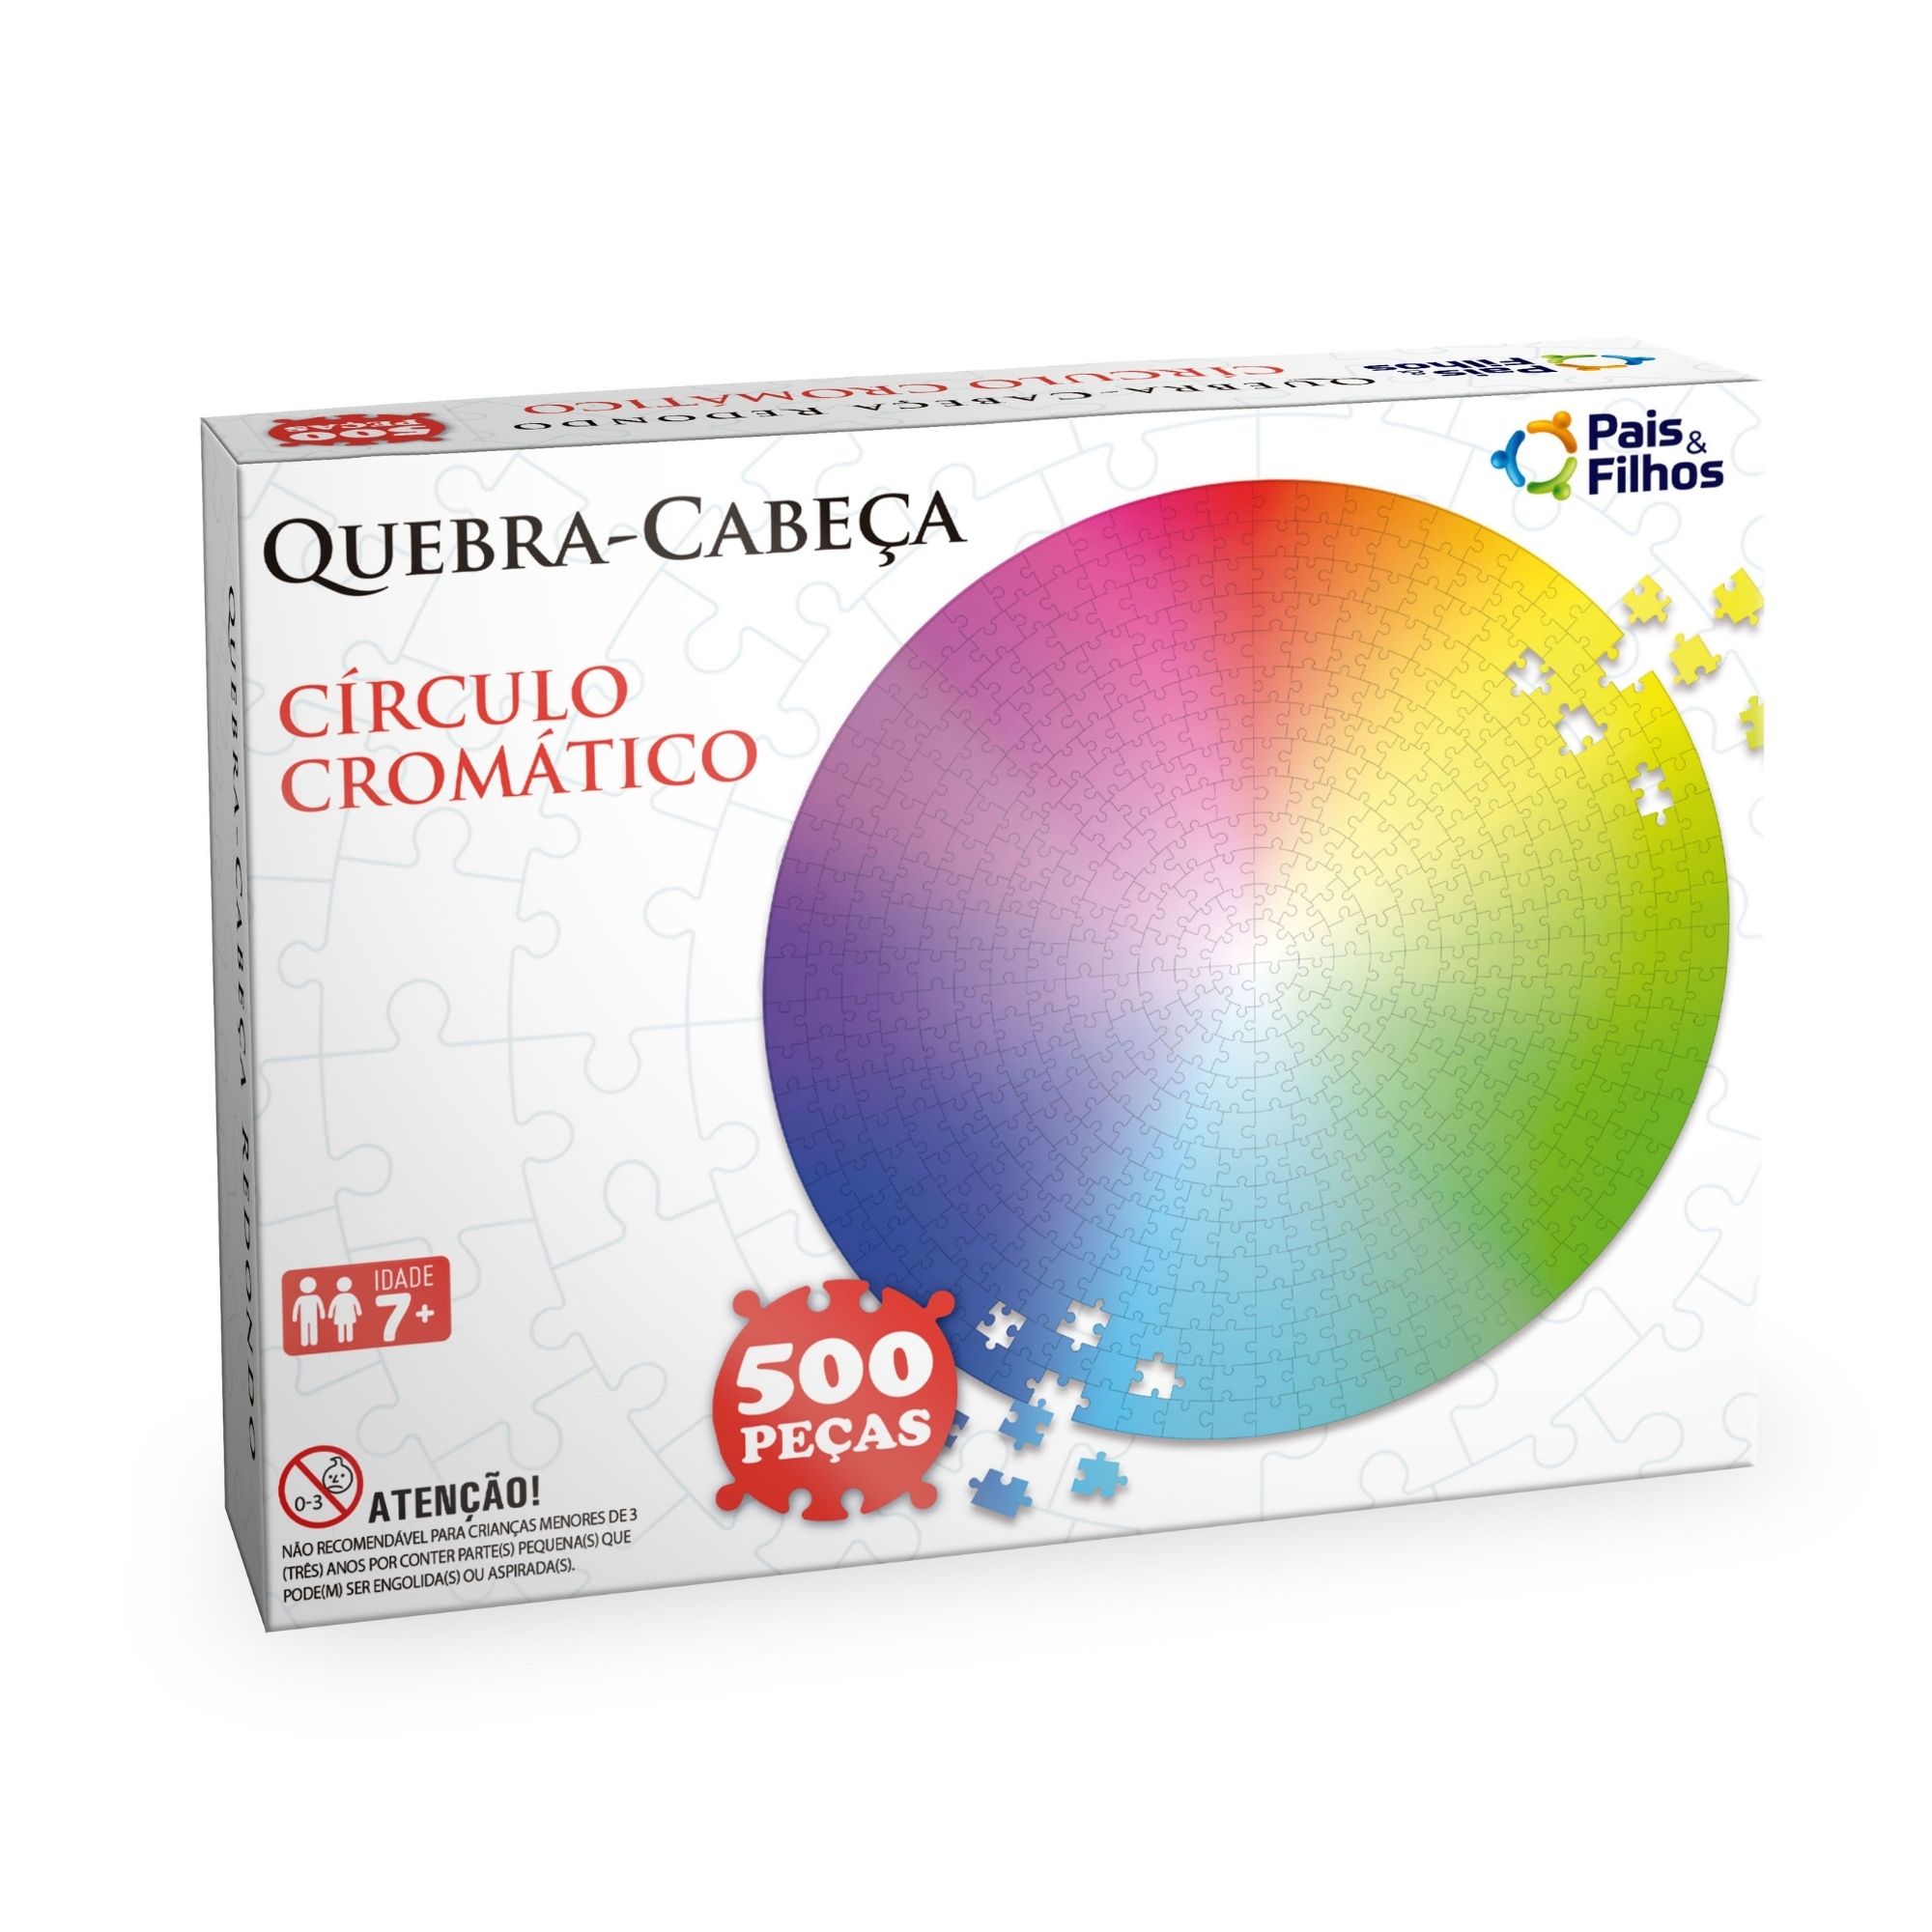 Quebra-cabeça - Circulo Cromatico - Redondo 500 Peças - Premium